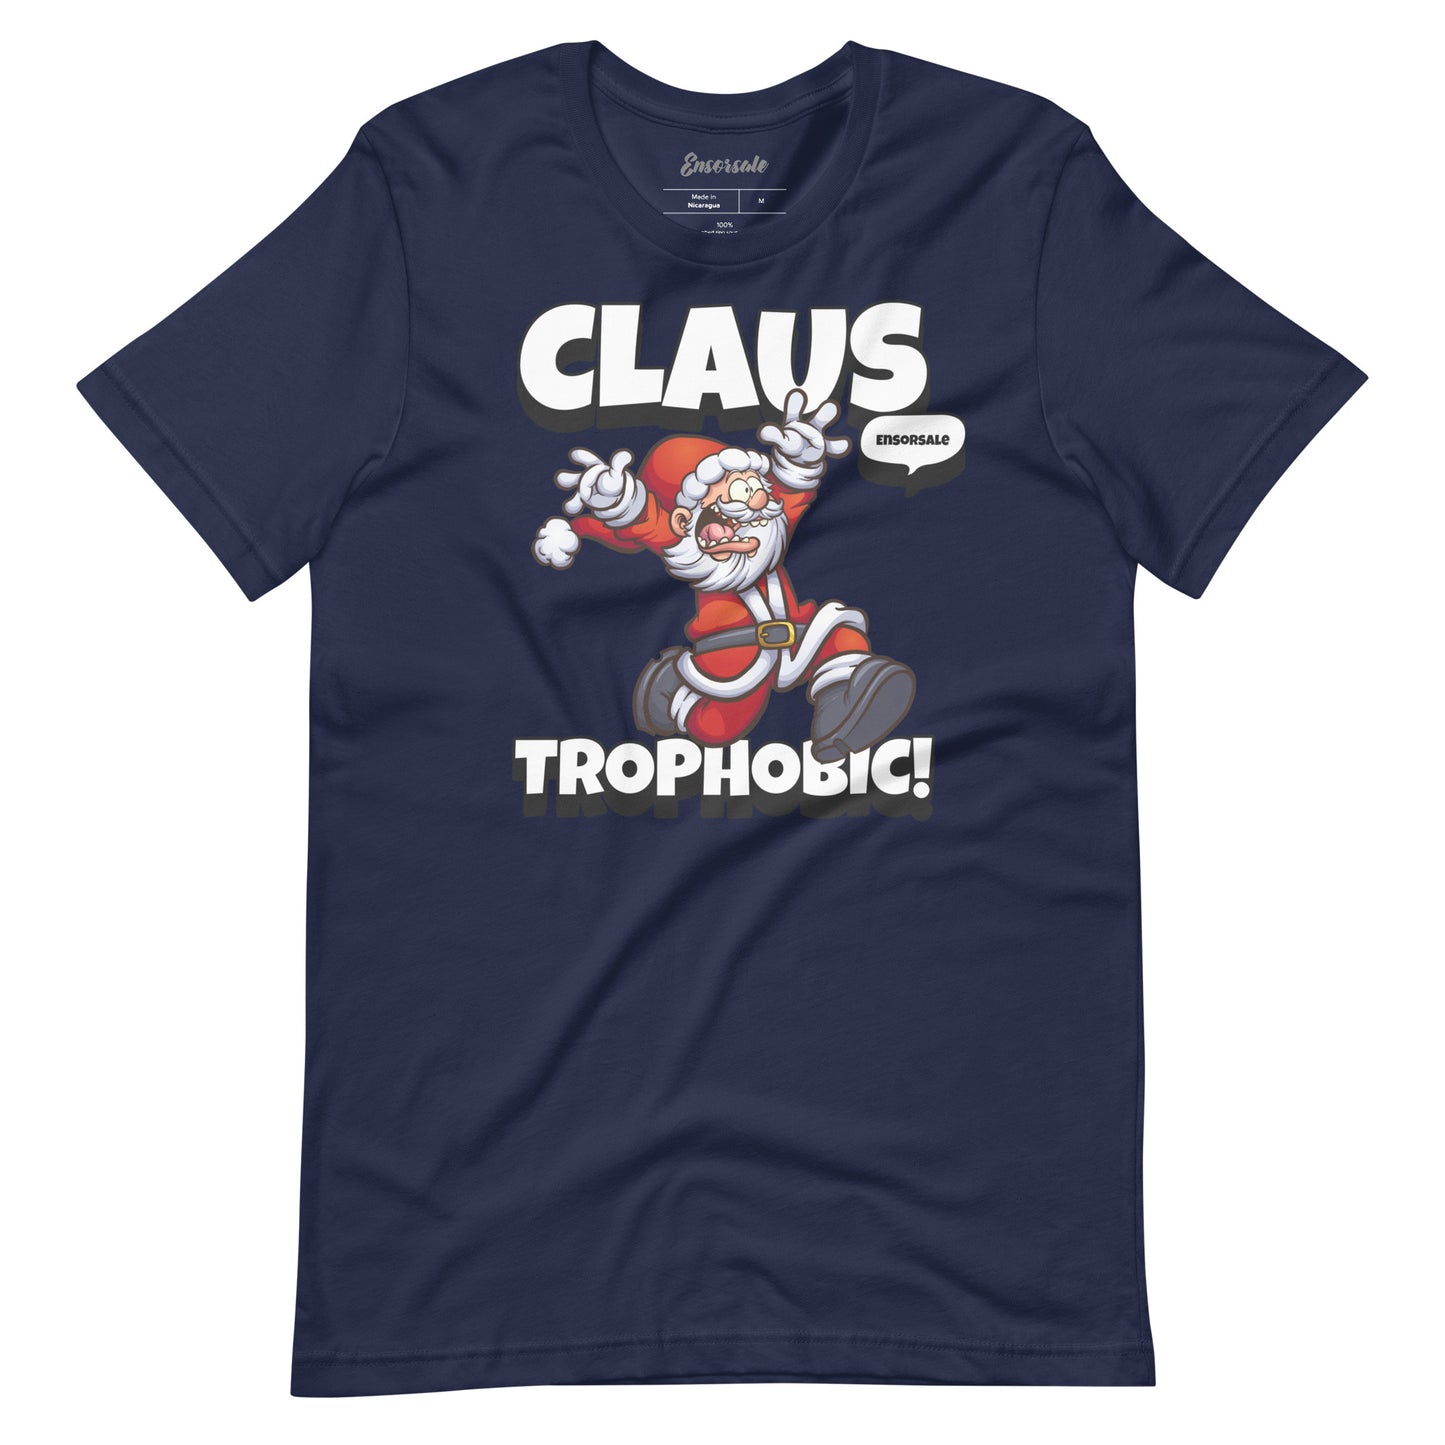 Claustrophobic t-shirt